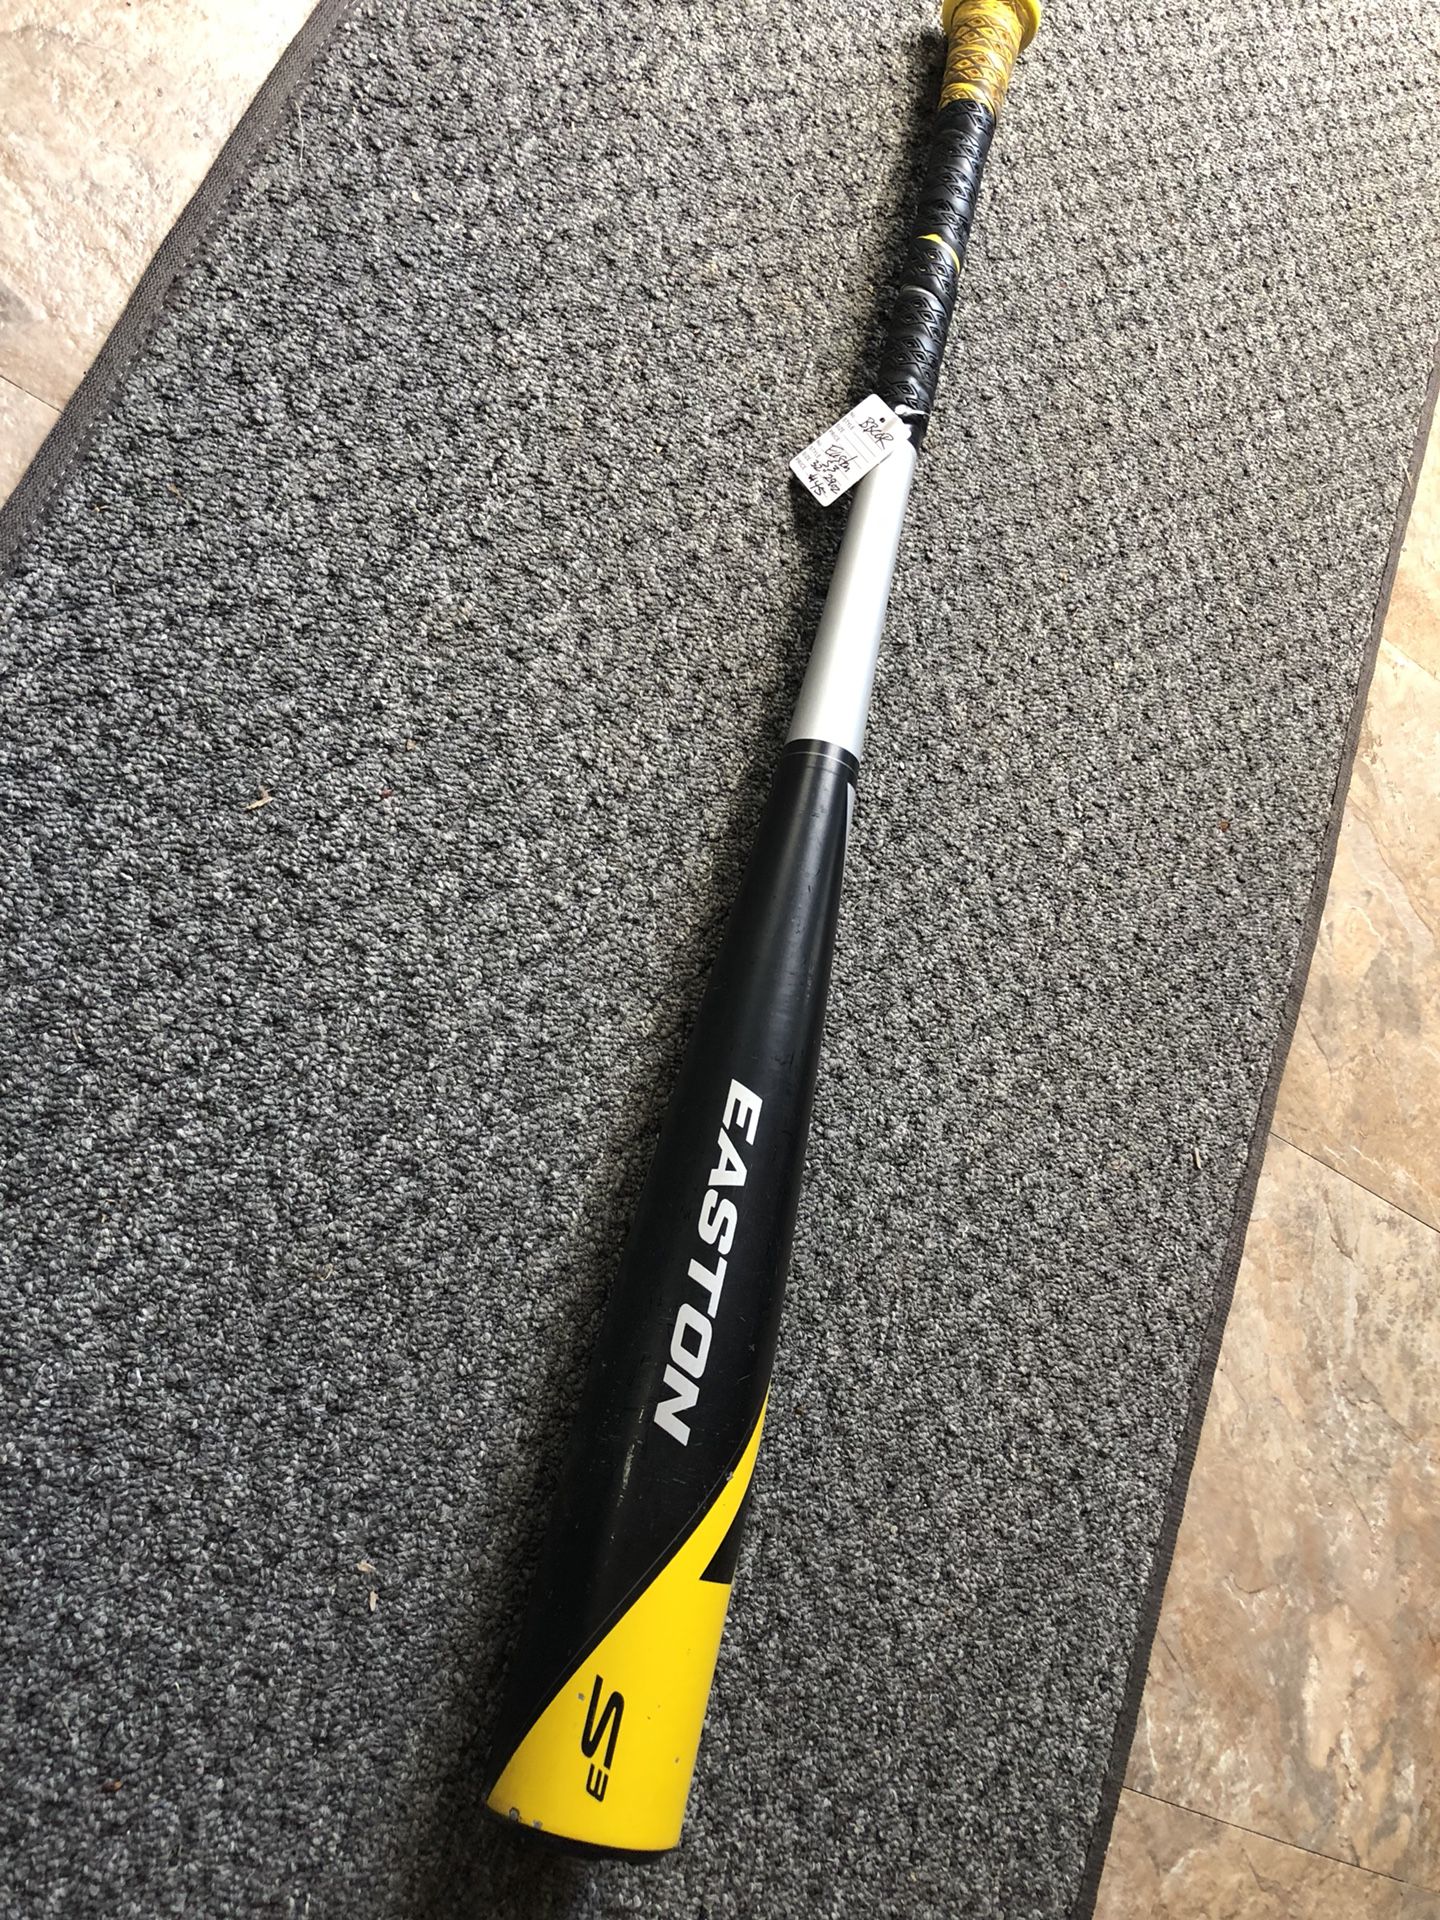 Easton S3 32”29oz BBCOR baseball bat